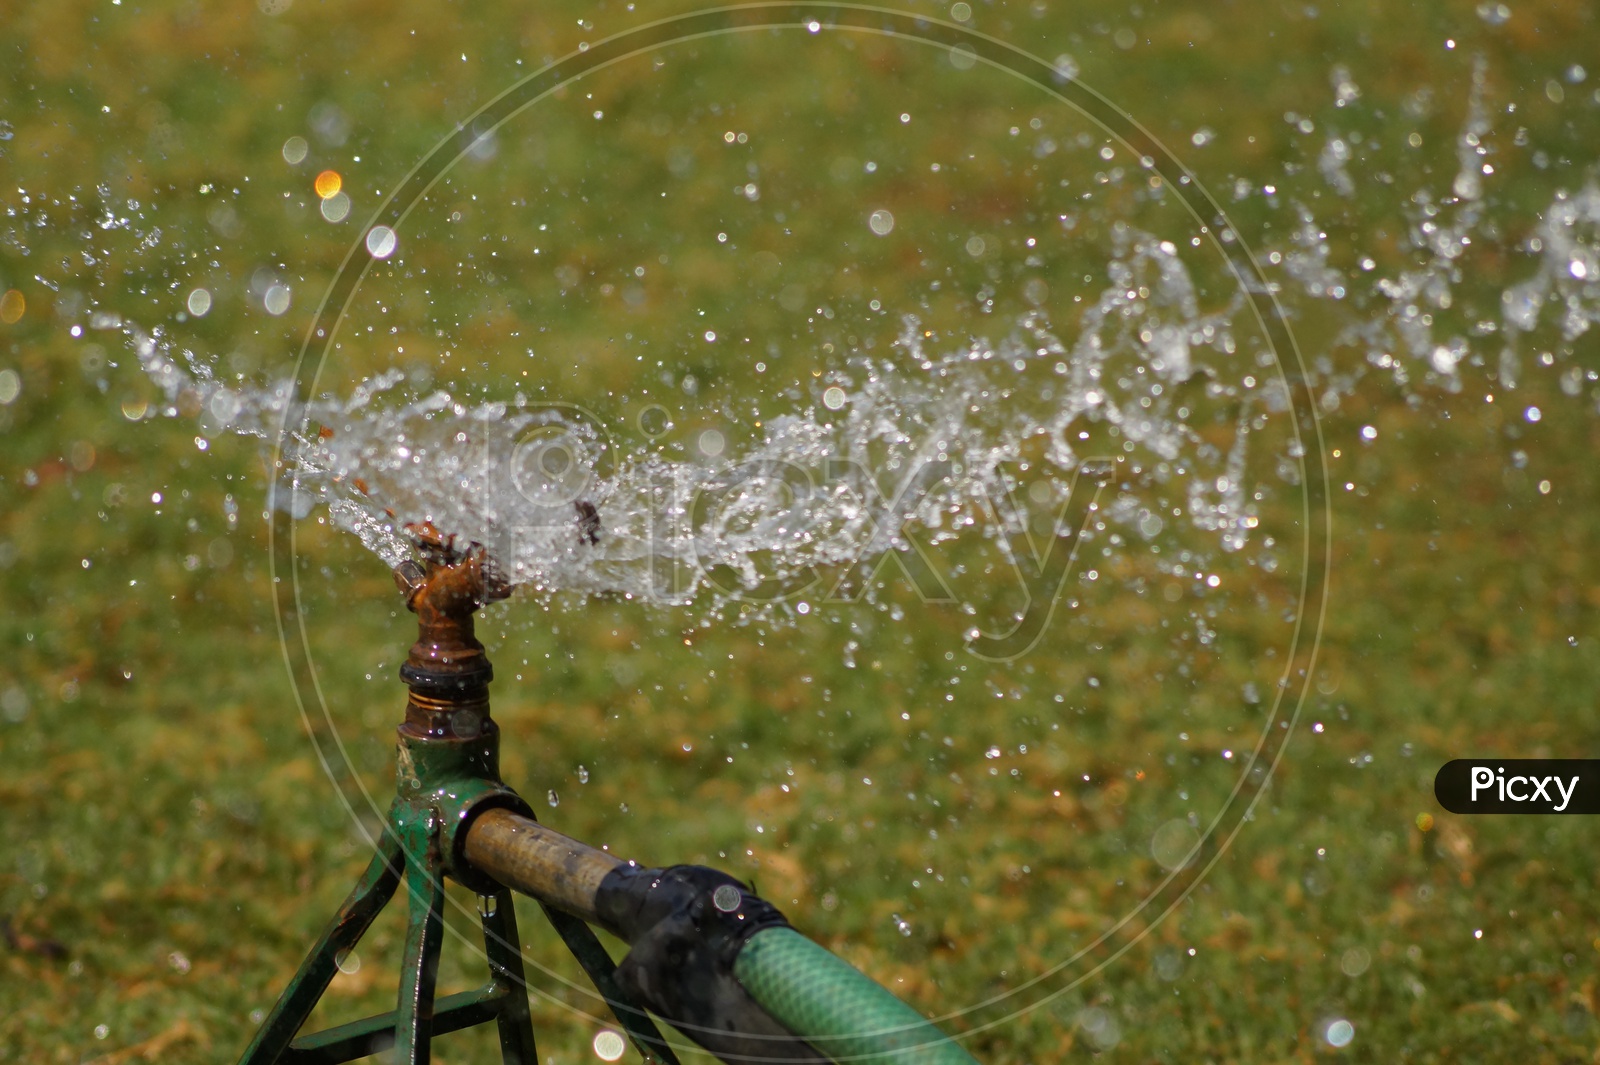 Water Sprinklers Sprinkling Water in a Garden